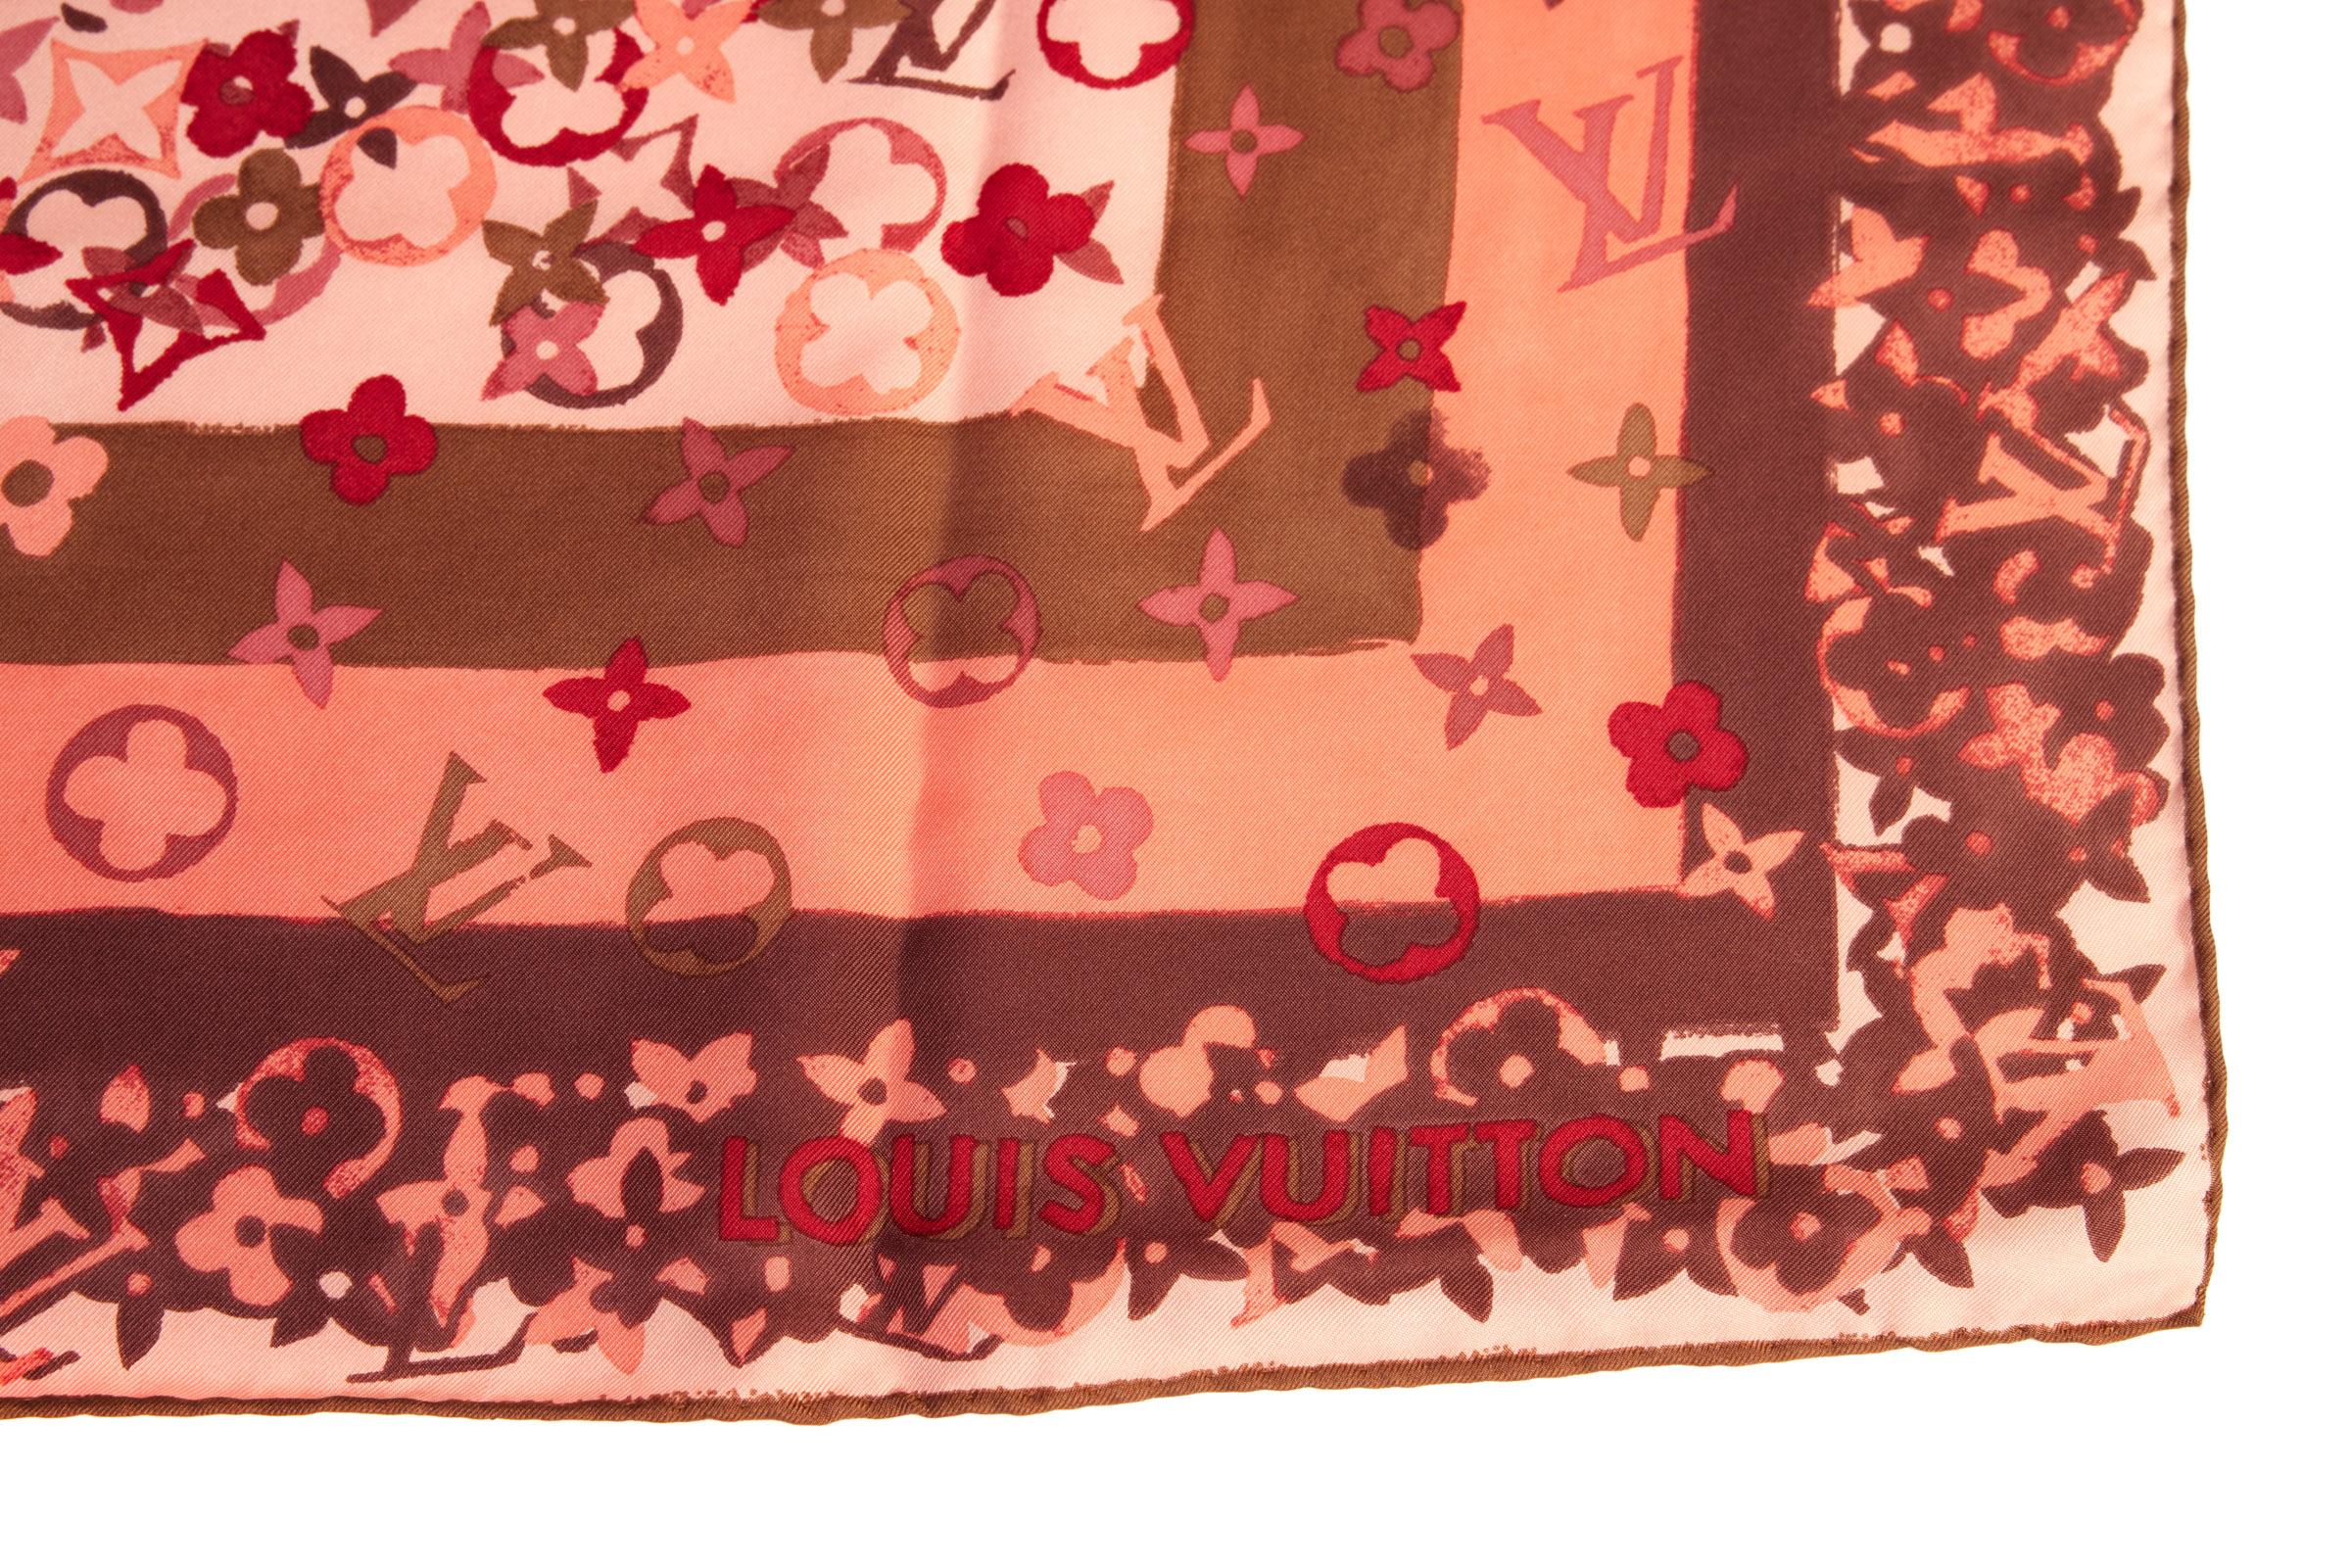 Echarpe à fleurs en soie Louis Vuitton, rose et marron. Bords roulés à la main. Étiquette d'entretien.